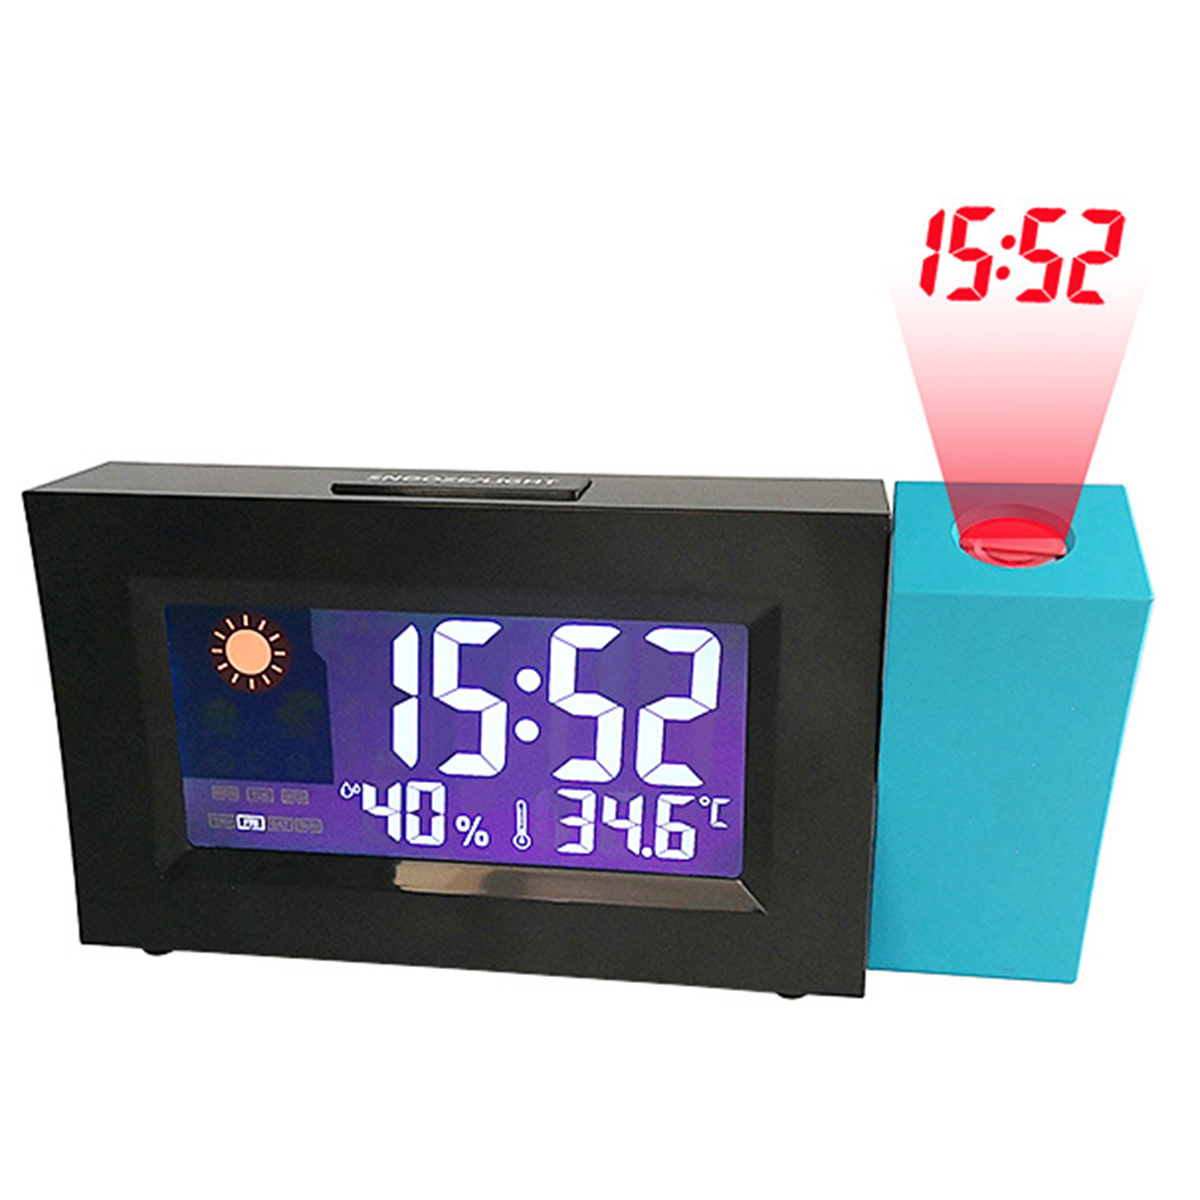 프로젝션 알람 시계 온도 습도 침대 옆 홈 오피스 프로젝션 디지털 알람 시계